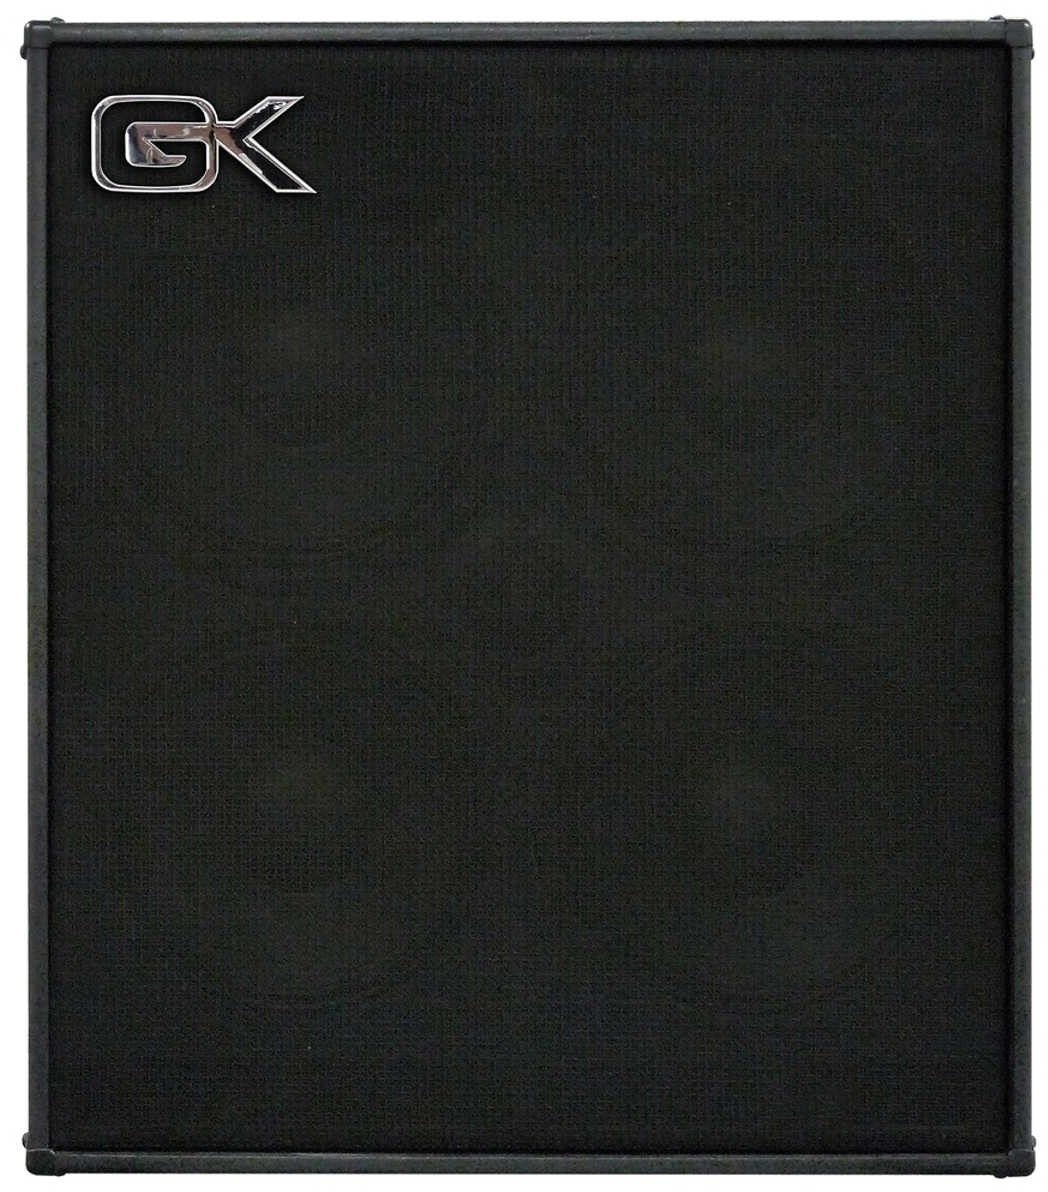 Bassbox Gallien Krueger CX-410 8 Ohm